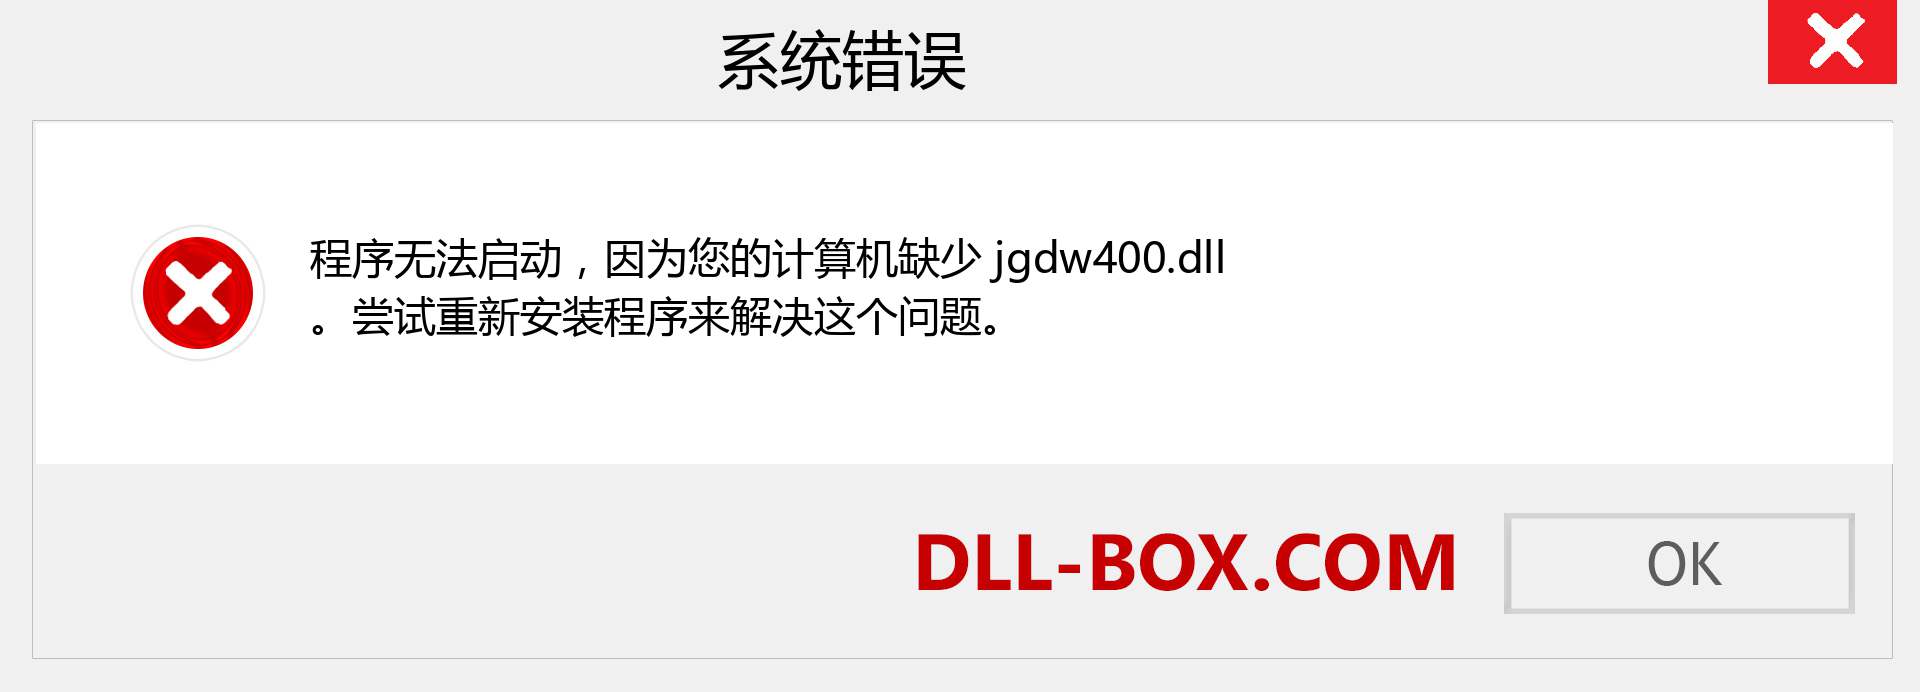 jgdw400.dll 文件丢失？。 适用于 Windows 7、8、10 的下载 - 修复 Windows、照片、图像上的 jgdw400 dll 丢失错误